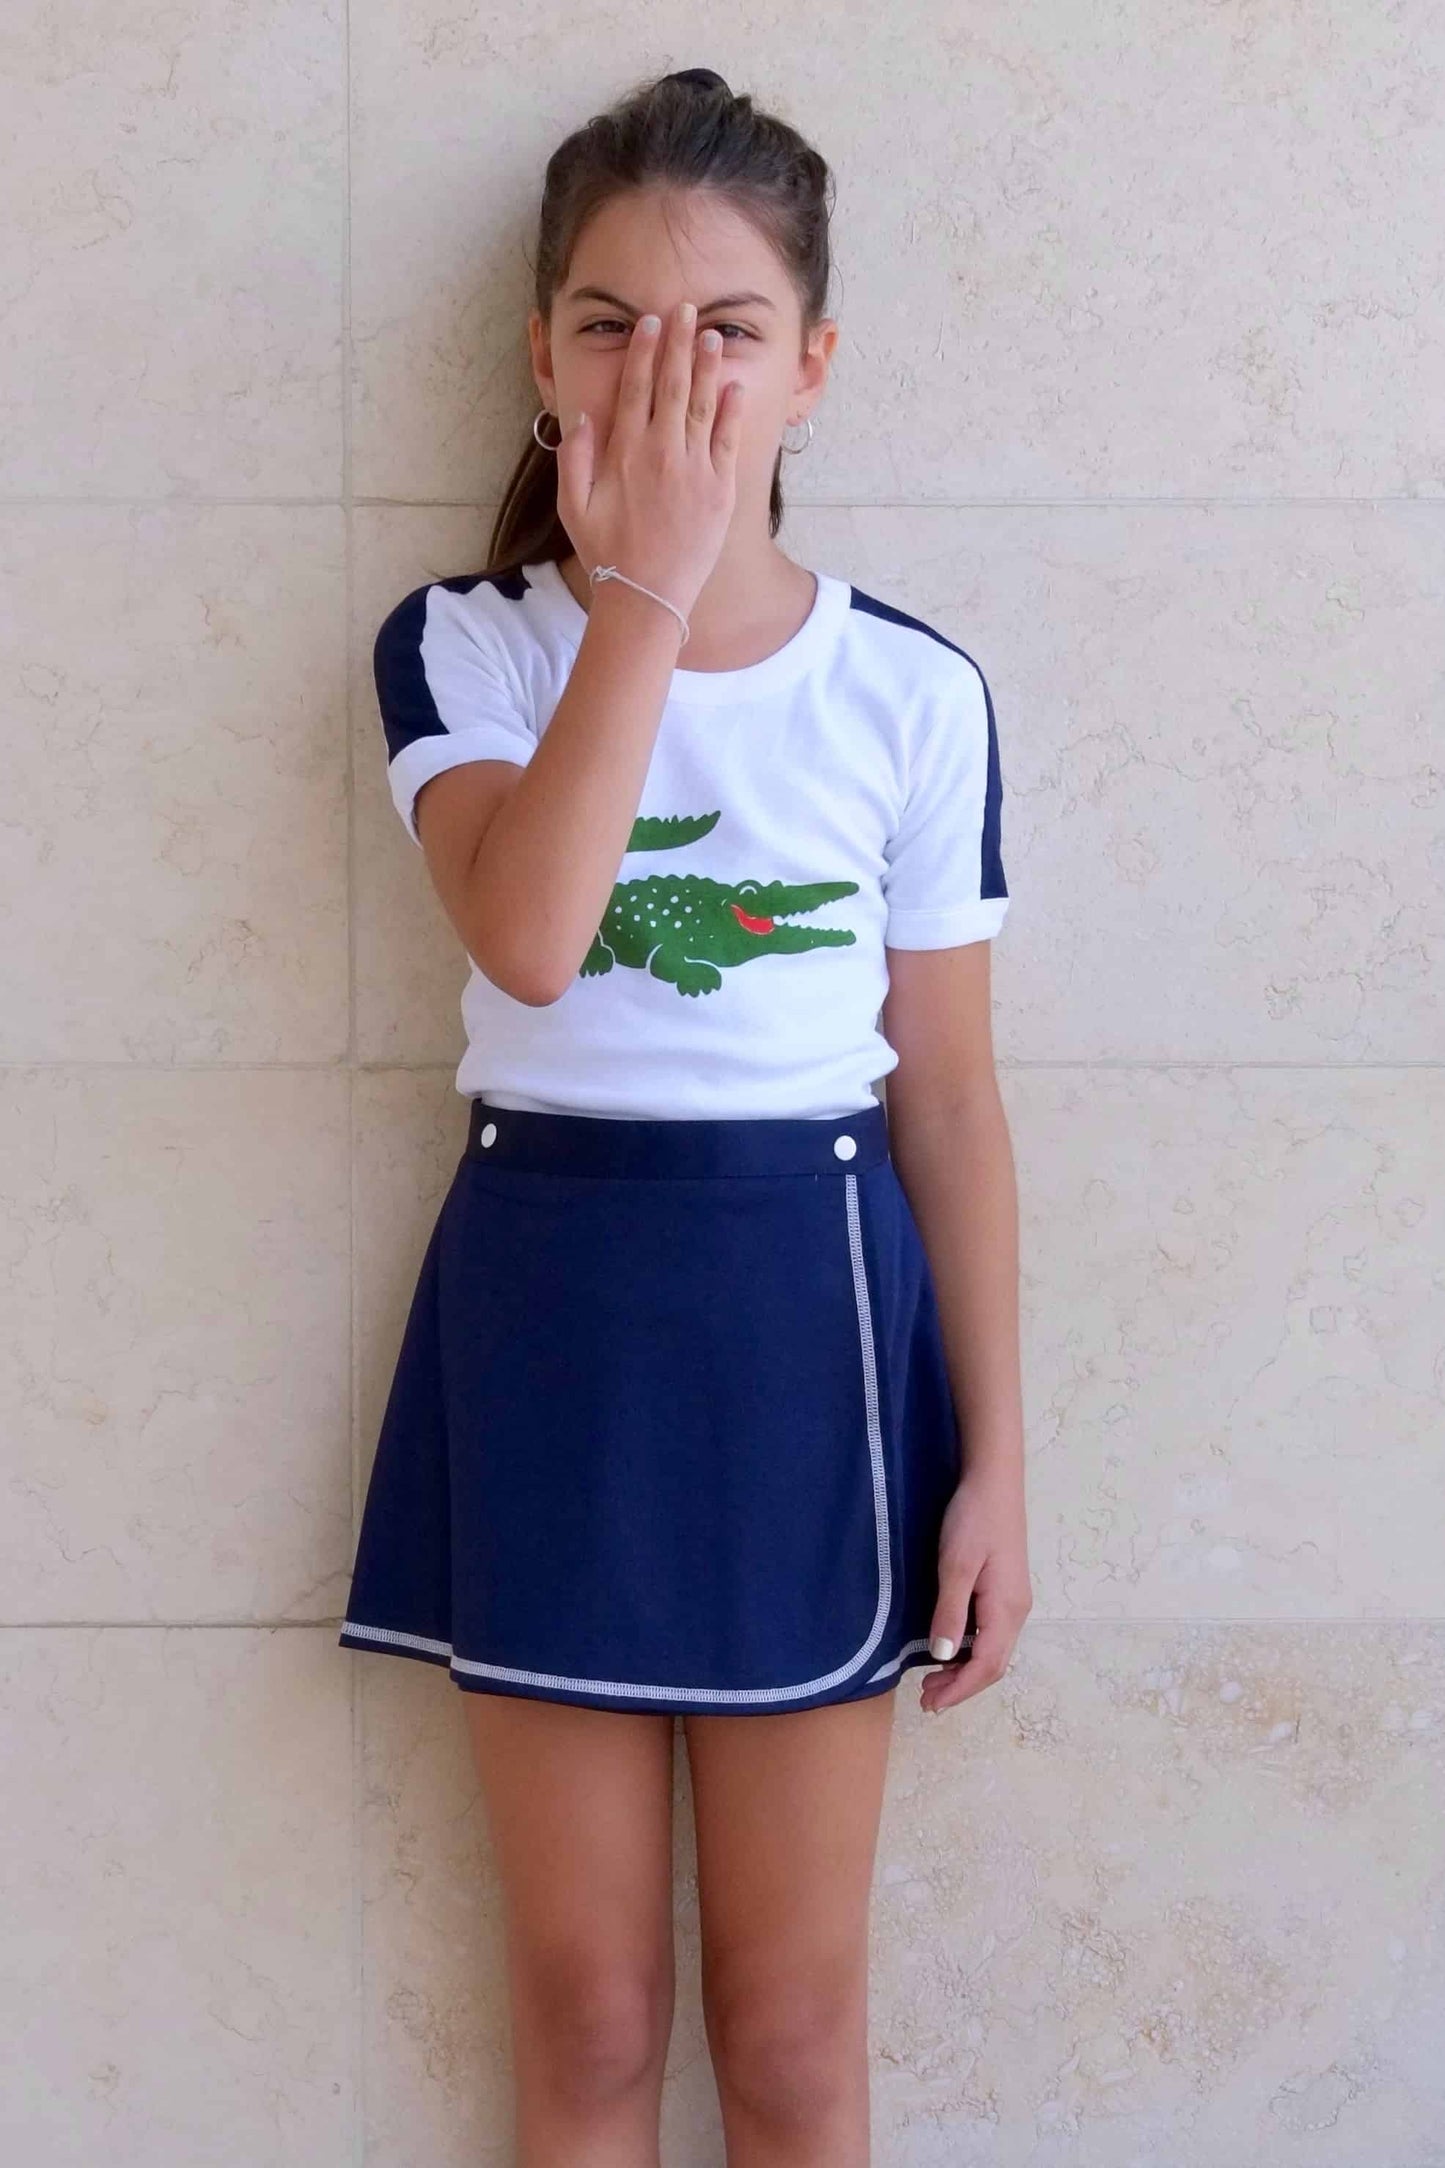 LACOSTE Crocodile Logo T-shirt in white modeled on girl in navy skirt 